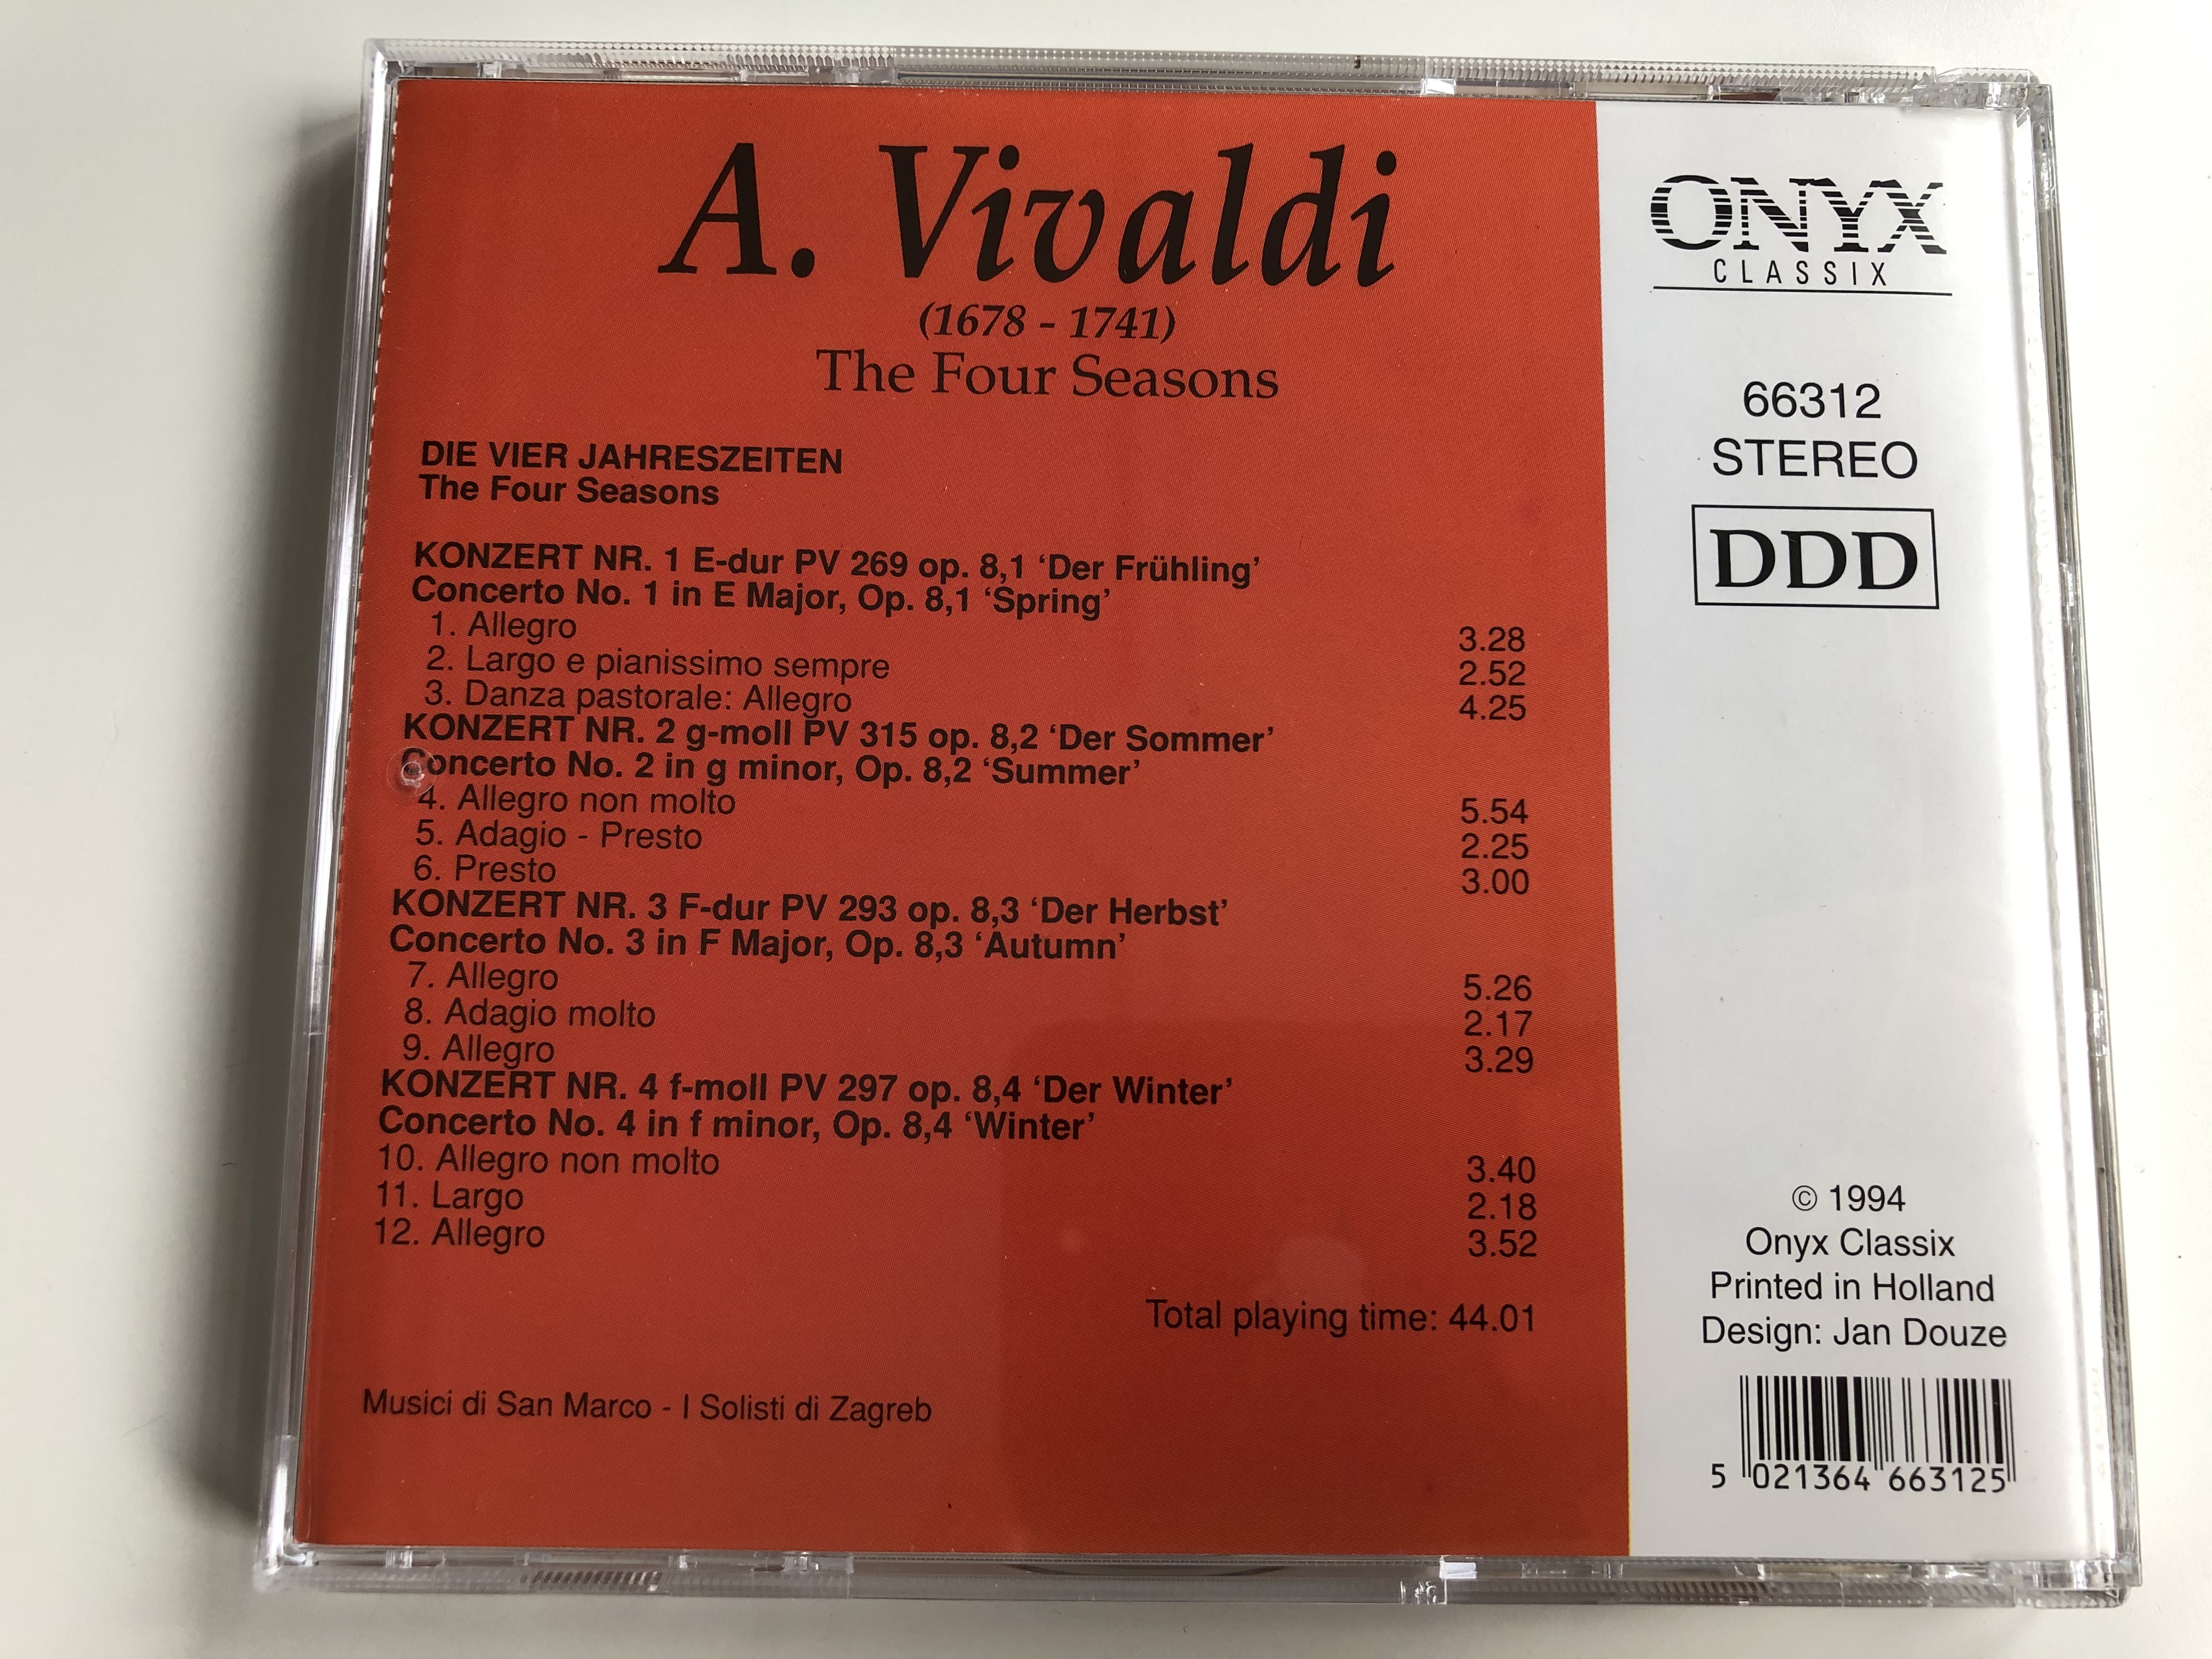 vivaldi-the-four-seasons-musici-di-san-marco-i-solisti-di-zagreb-onyx-classix-audio-cd-1994-stereo-666312-3-.jpg